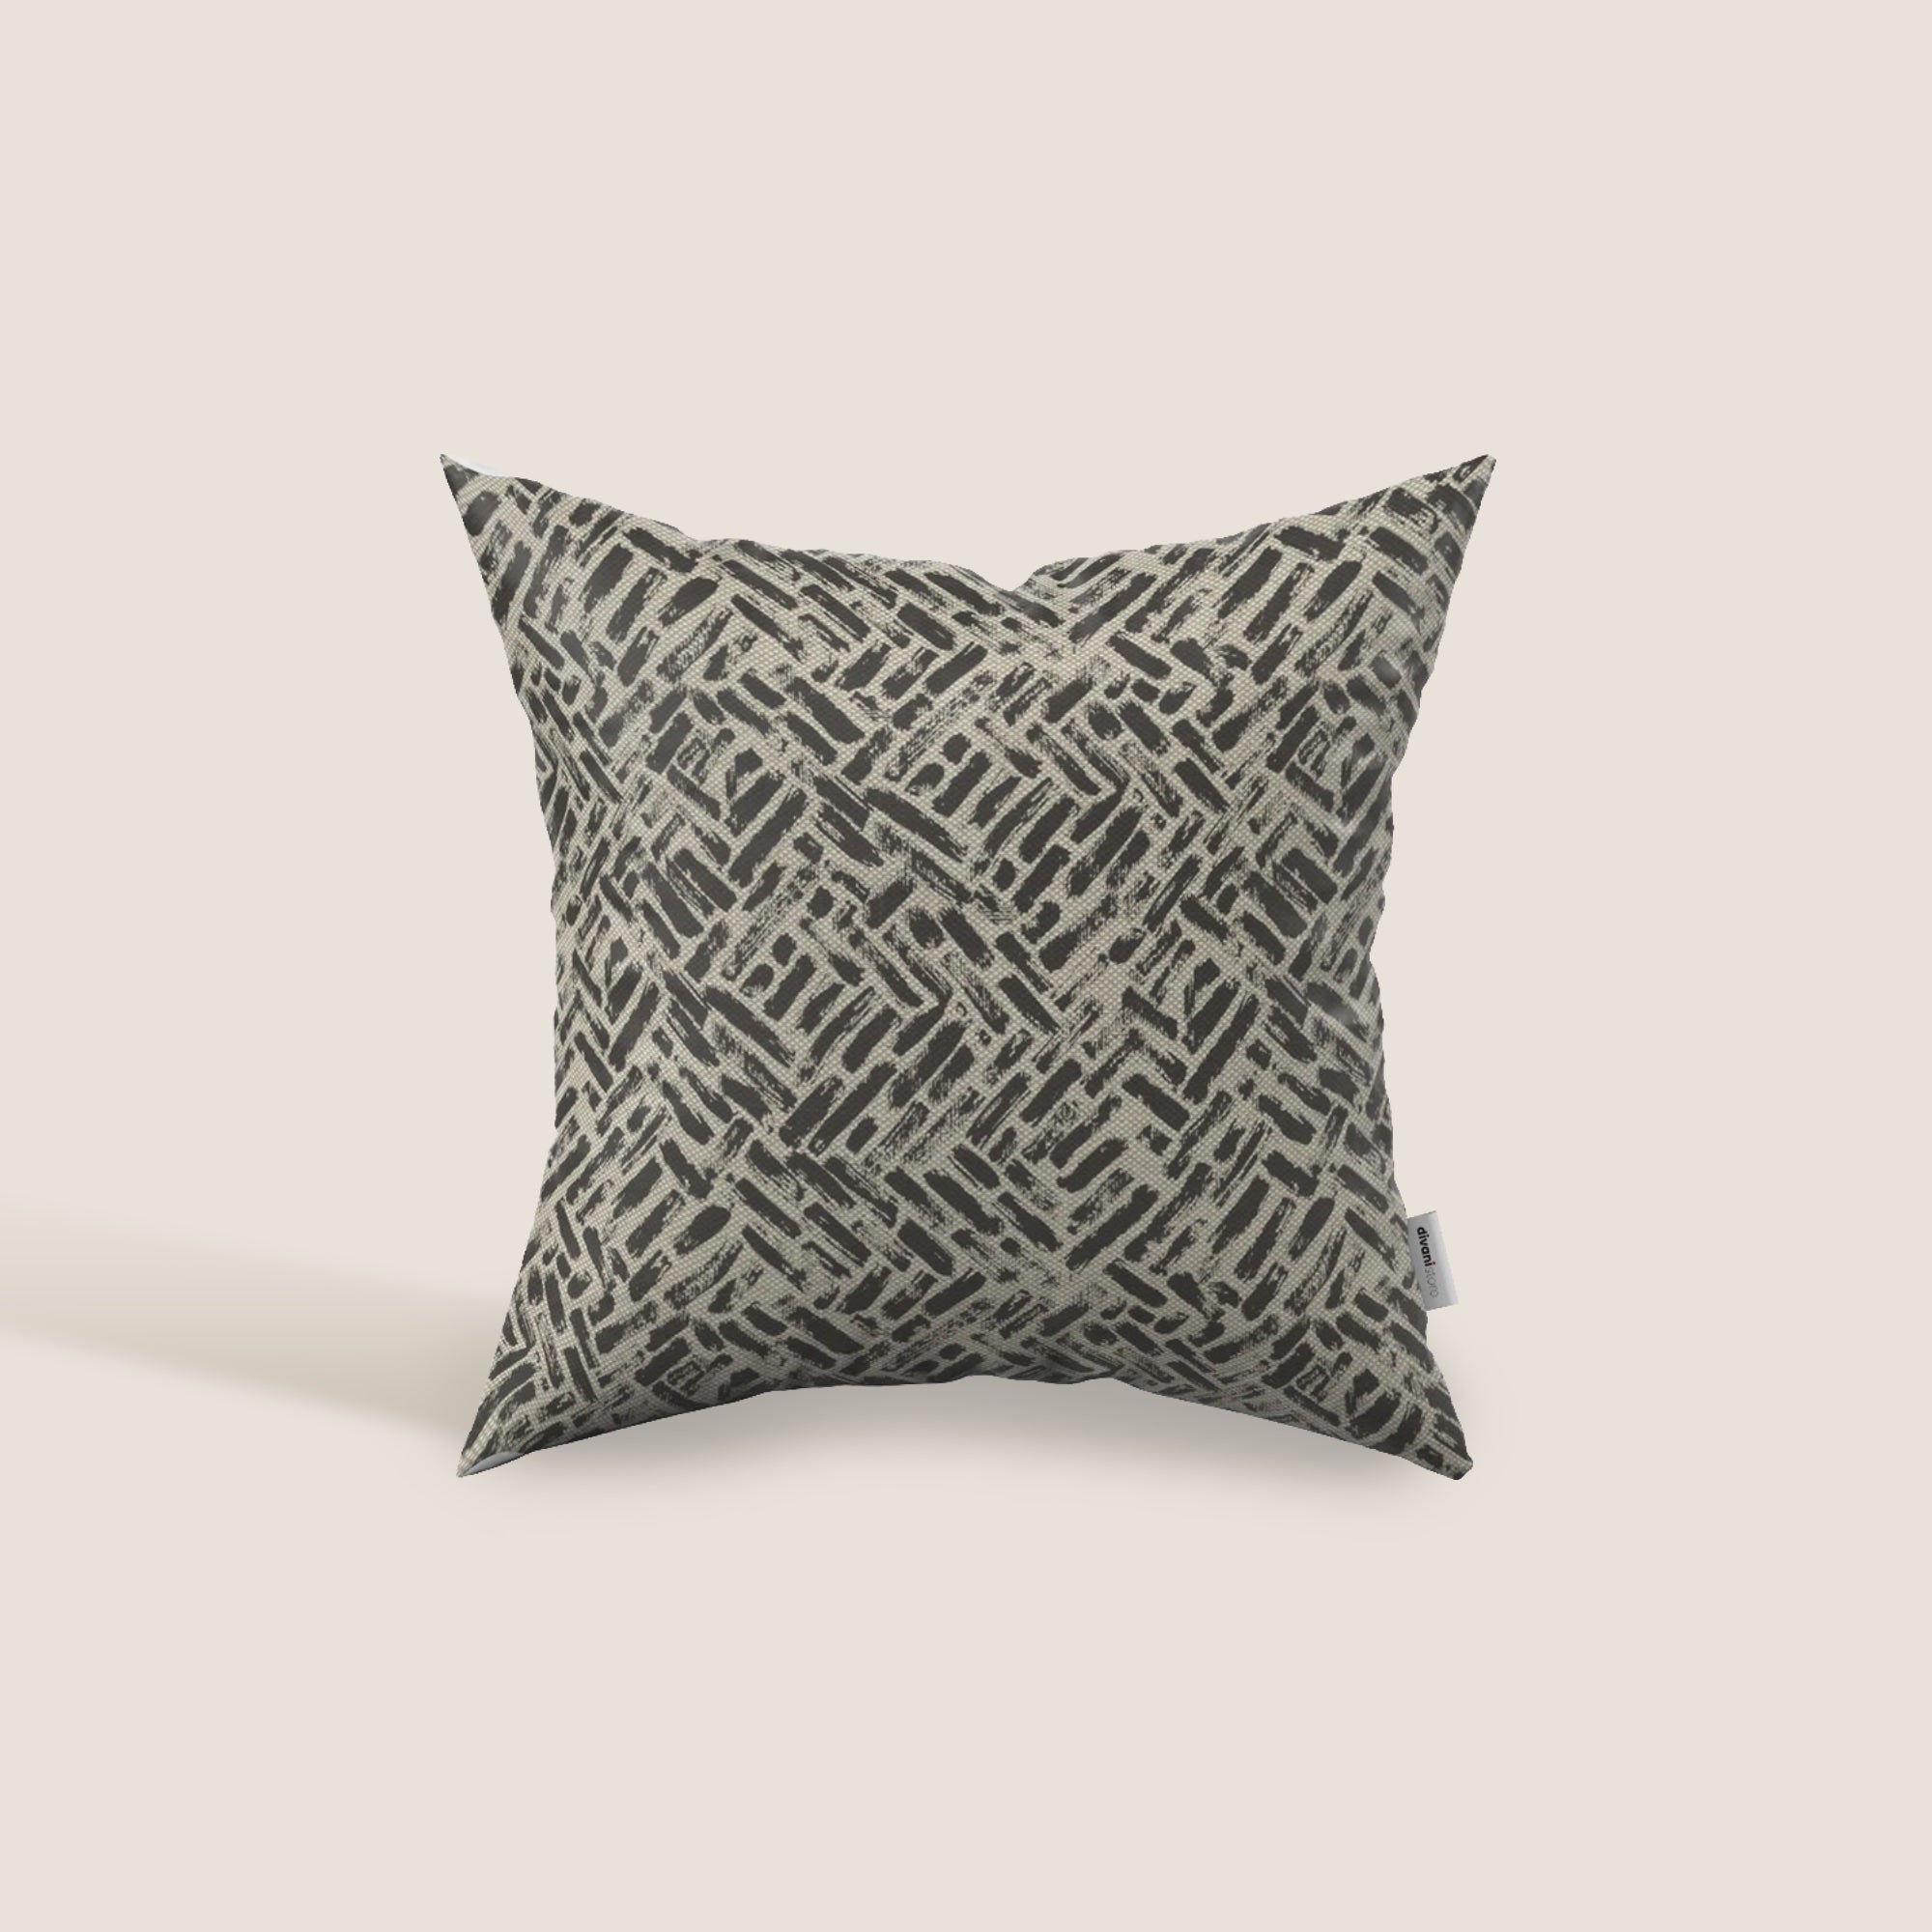 Brick cuscino geometrico disponibile in diversi colori realizzato in tessuto Idrorepellente